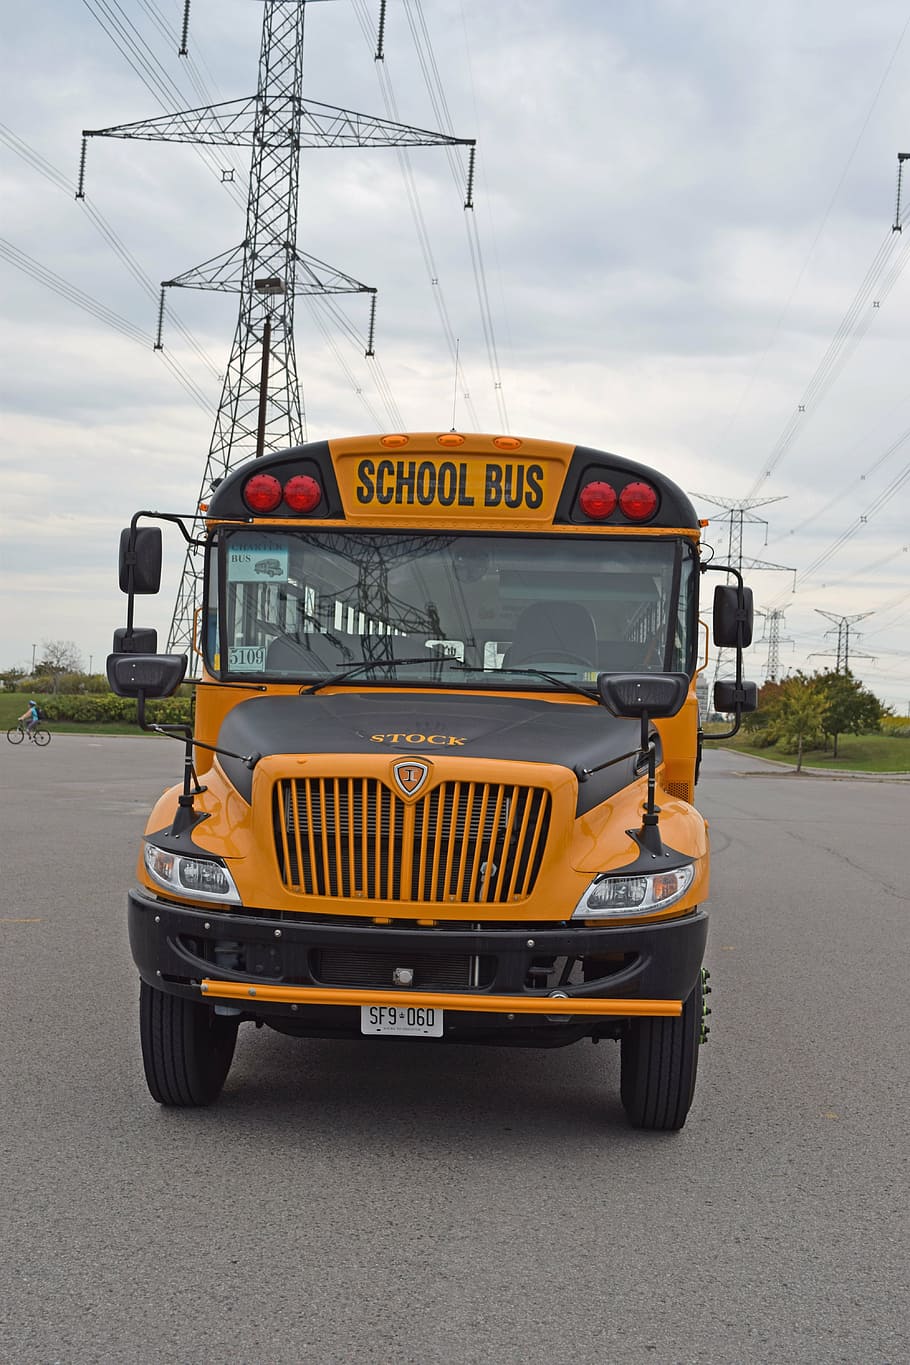 school bus, front, school, bus, transportation, education, transport, vehicle, public, schoolbus